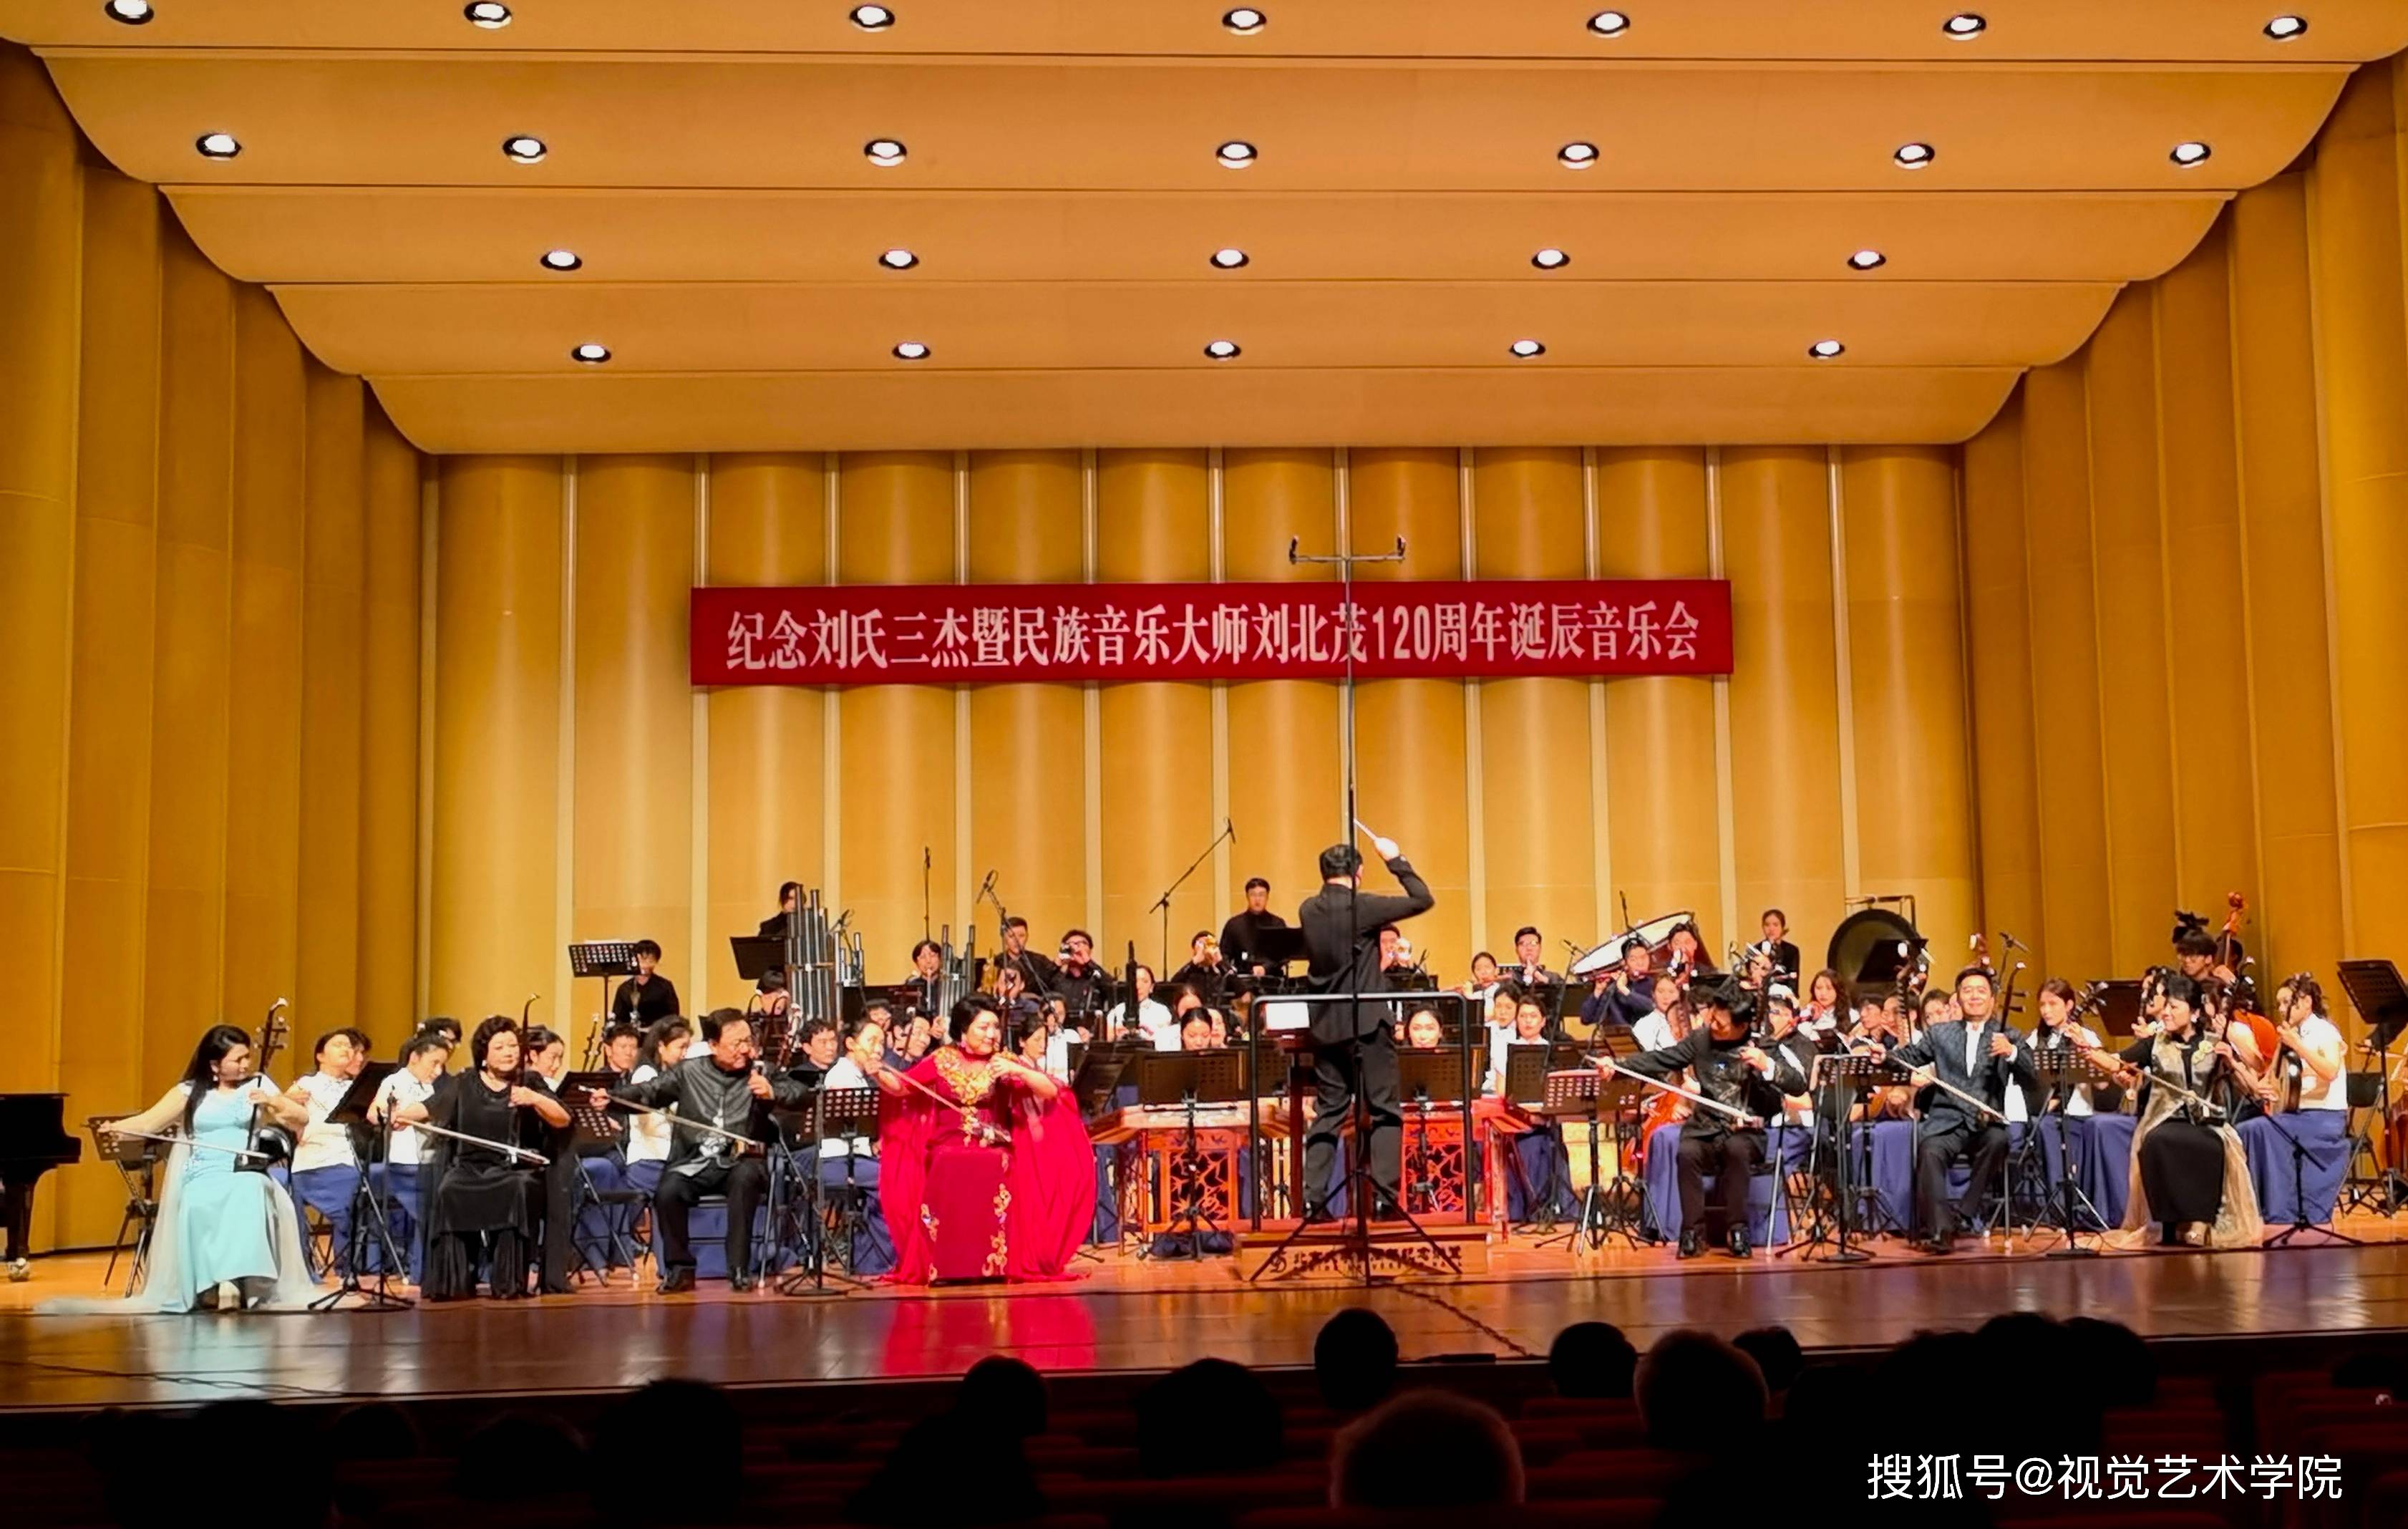 纪念刘氏三杰暨民族音乐大师刘北茂120周年诞辰音乐会在北京举行